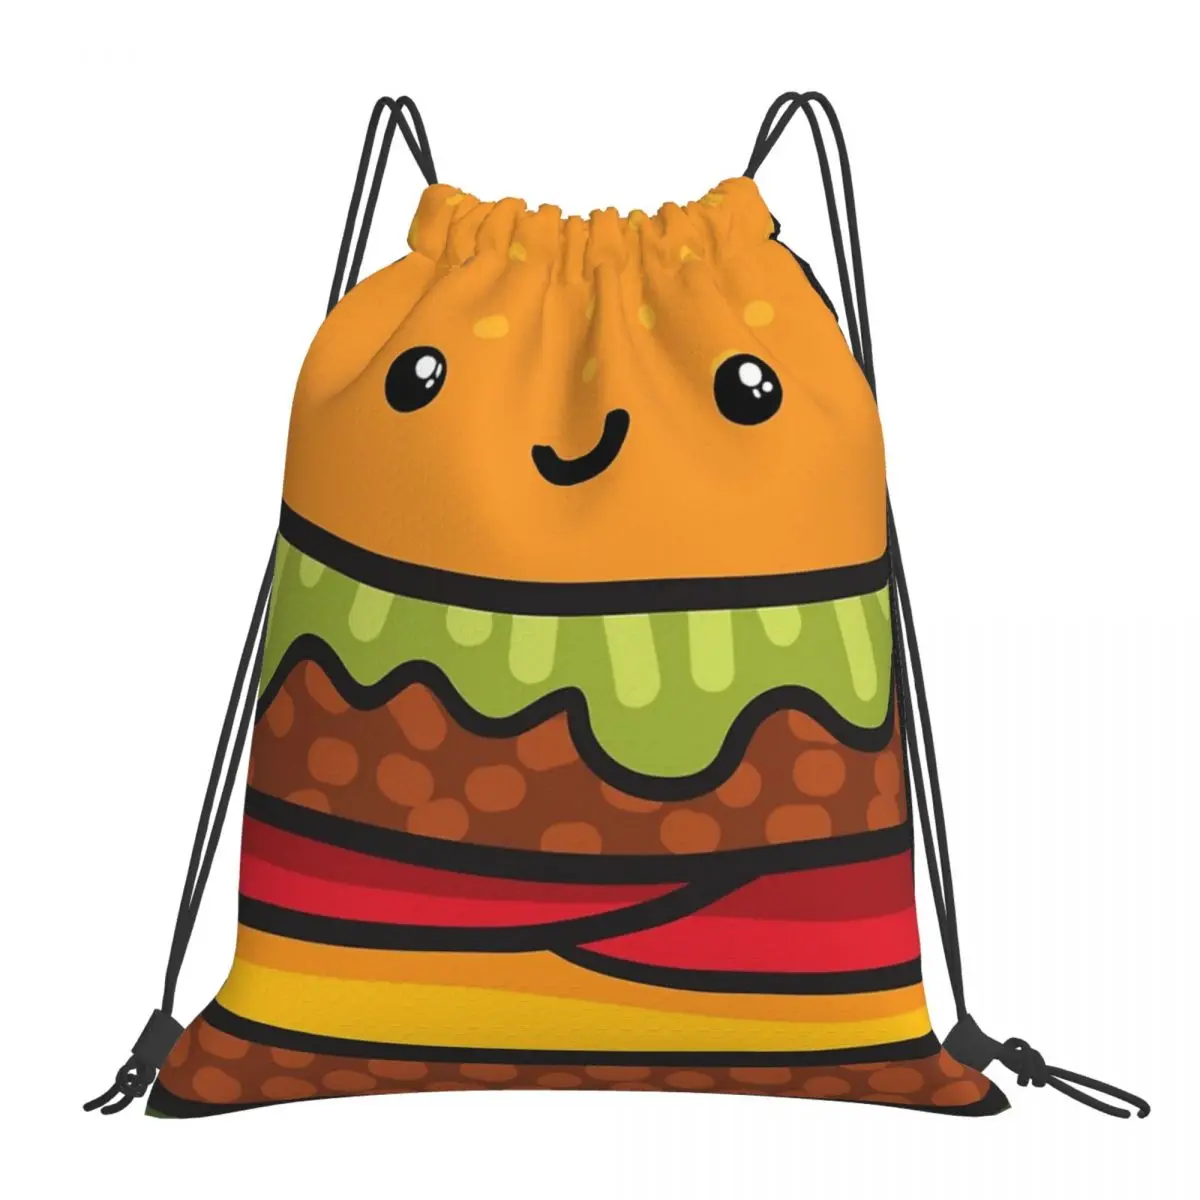 

Cute Burger. Hamburger Fast Food Backpack Portable Drawstring Bags Drawstring Bundle Pocket Sports Bag For Travel Students